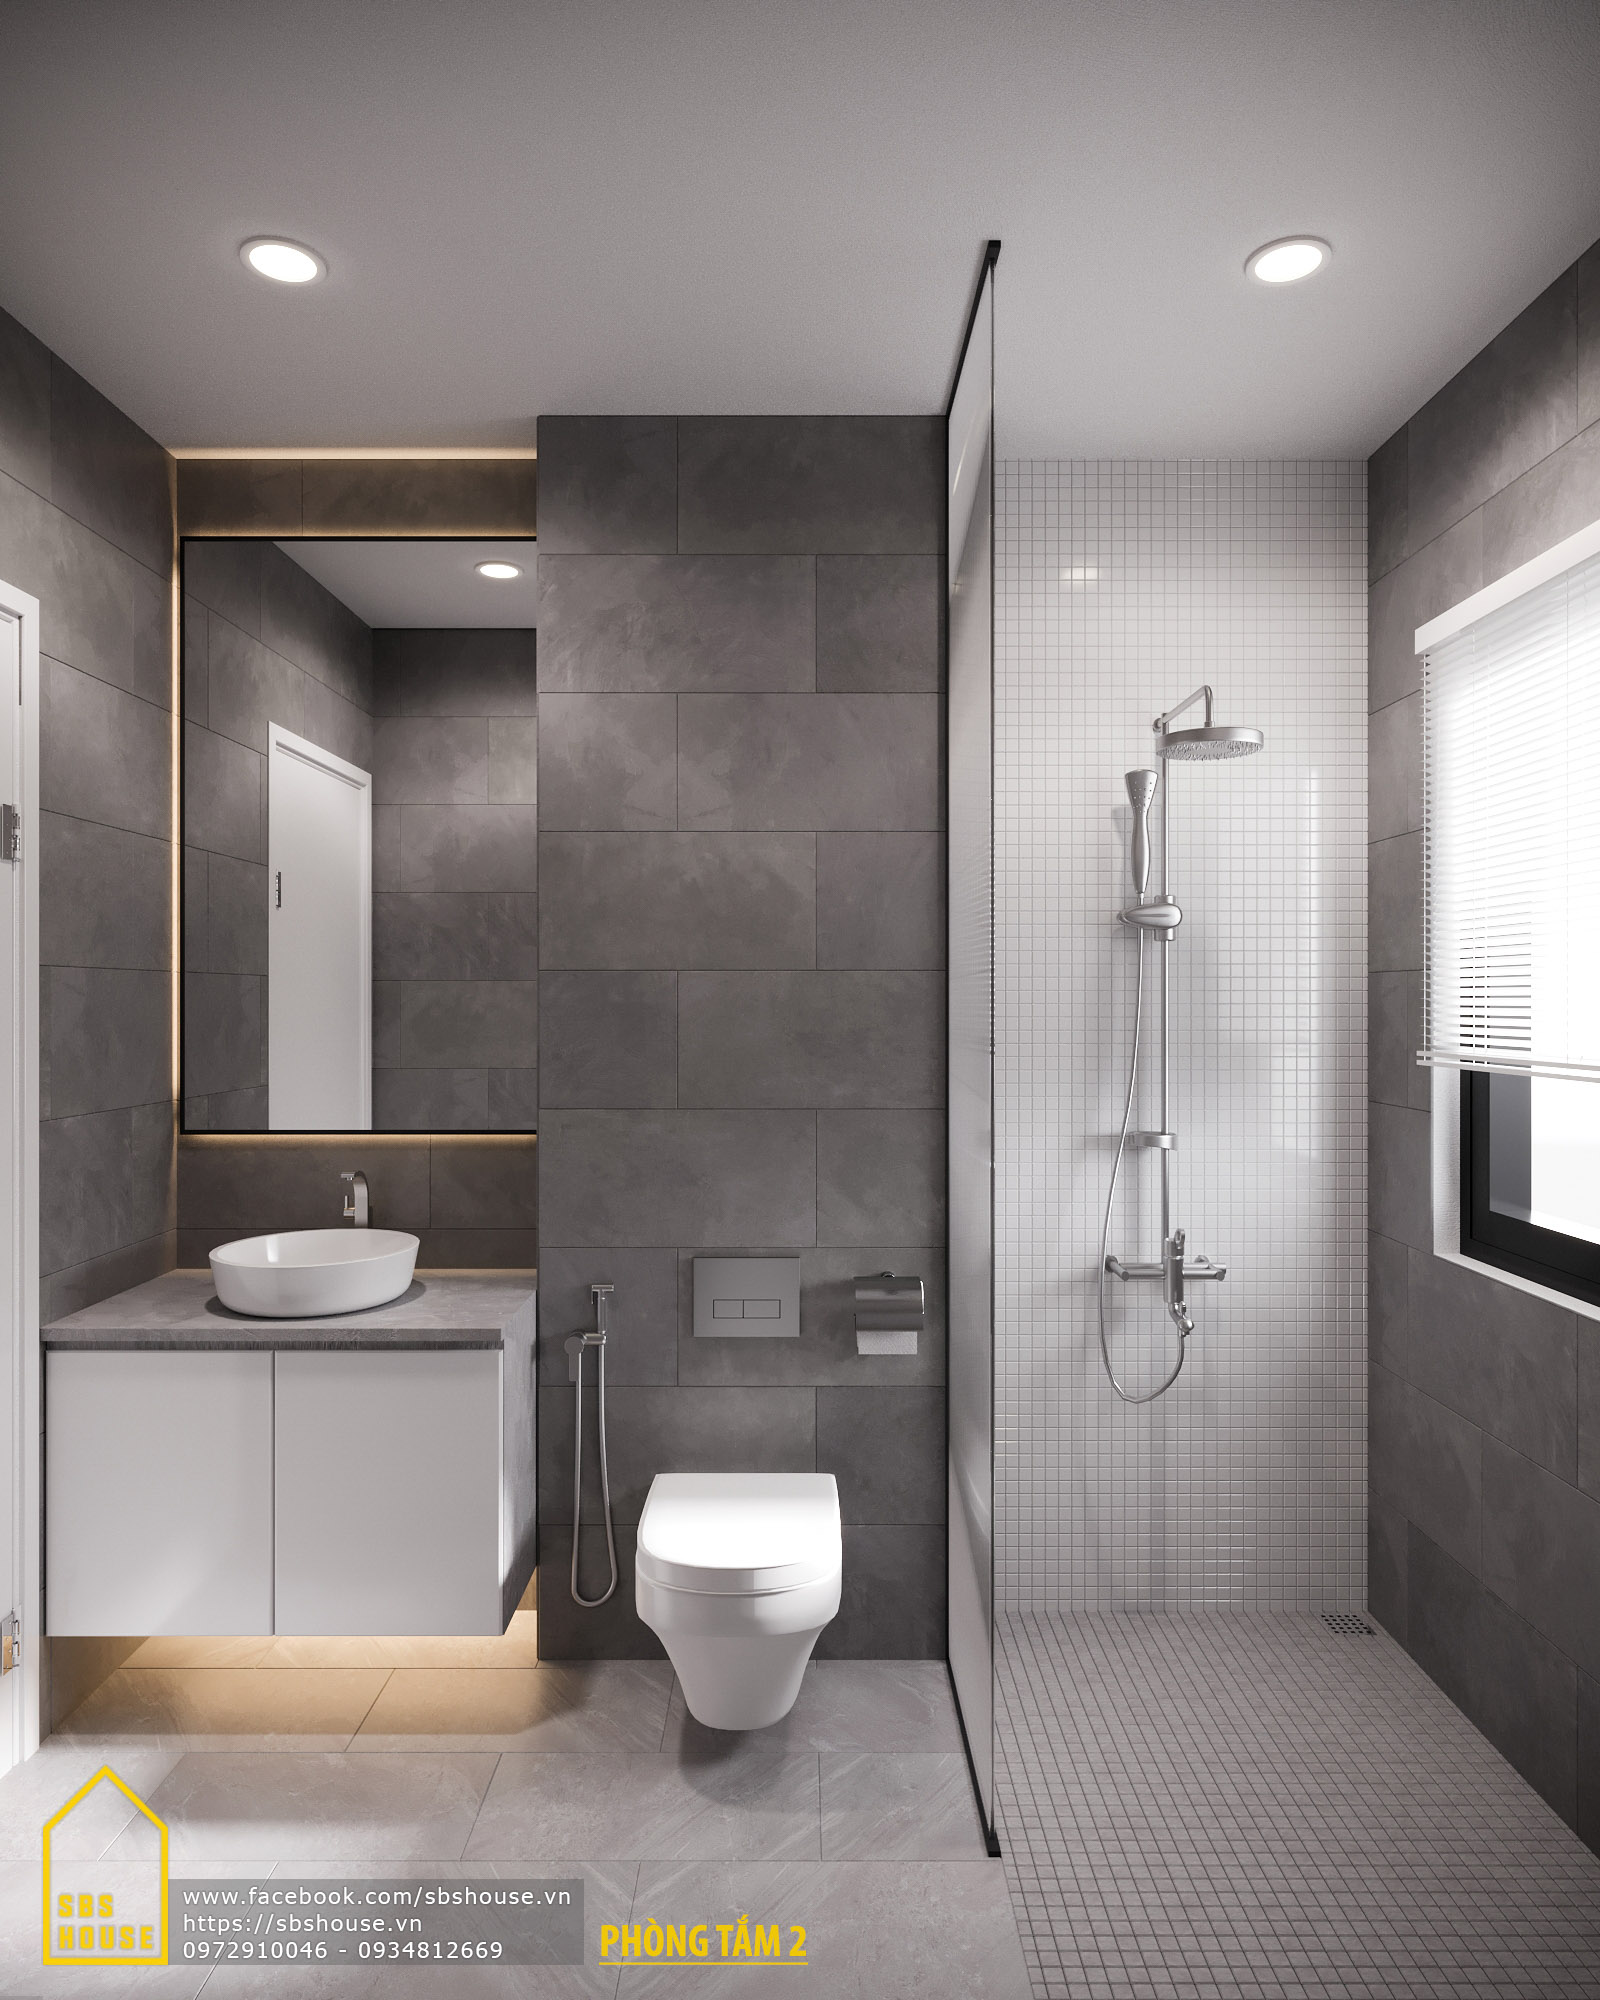 71 thiết kế phòng tắm nhỏ đẹp nhà tắm đẹp đơn giản quyến rũ bất ngờ